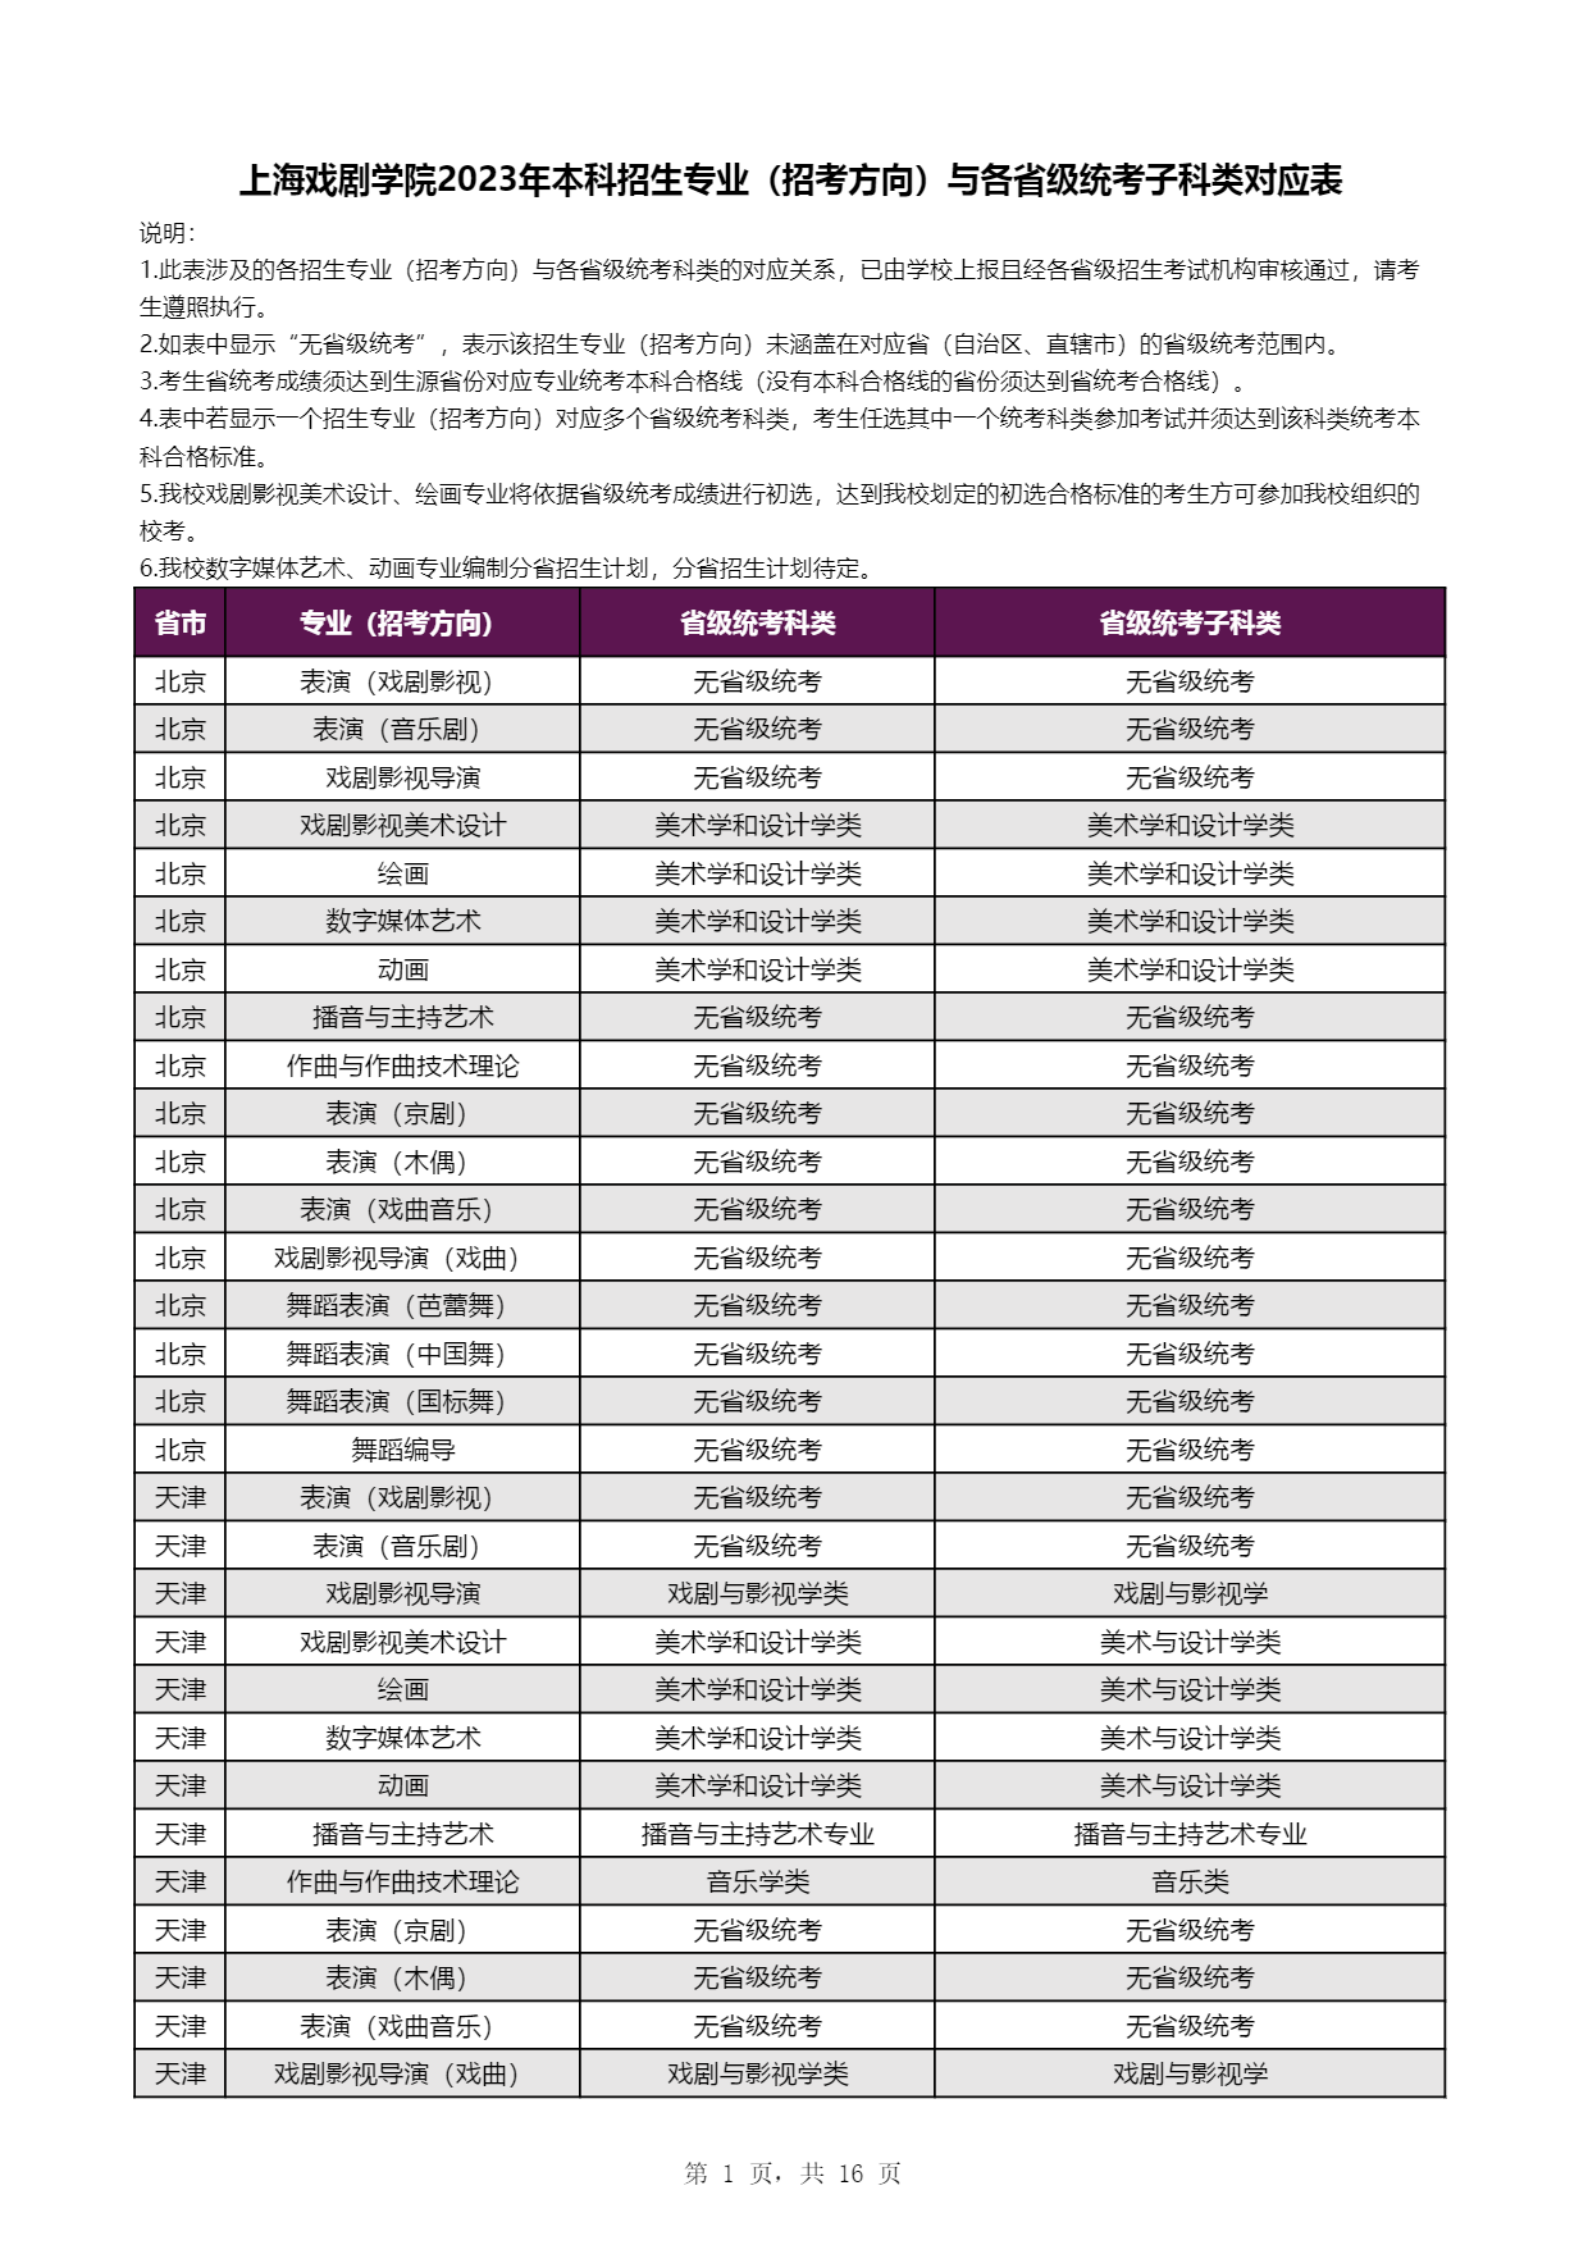 【子科类对应表】上海戏剧学院2023年本科招生专业（招考方向）与各省级统考子科类对应表_00.png